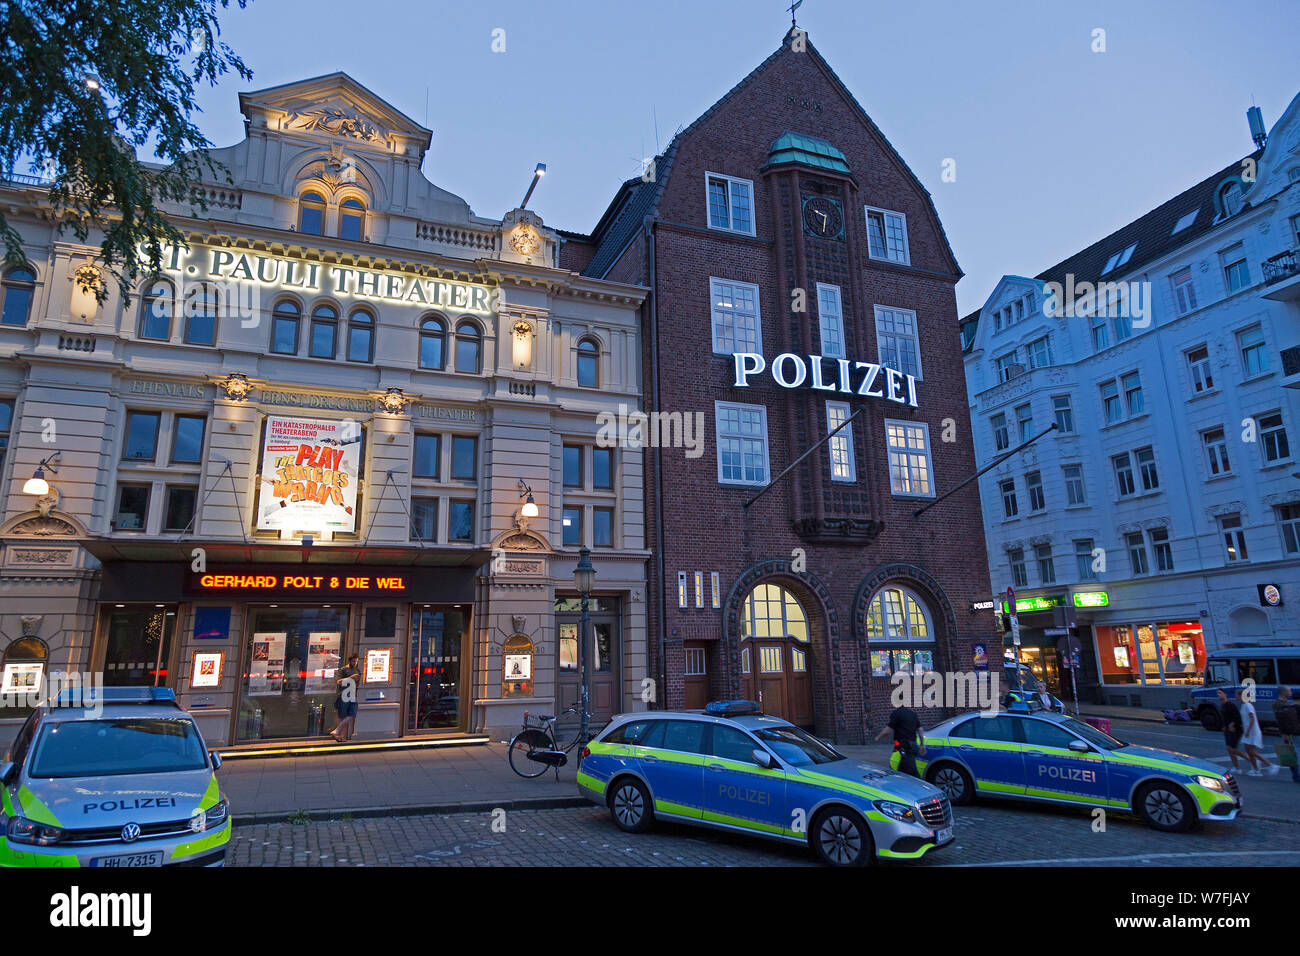 Teatro St. Pauli y la estación de policía Davidwache (David watch), Reeperbahn, Sankt Pauli, Hamburgo, Alemania. Foto de stock